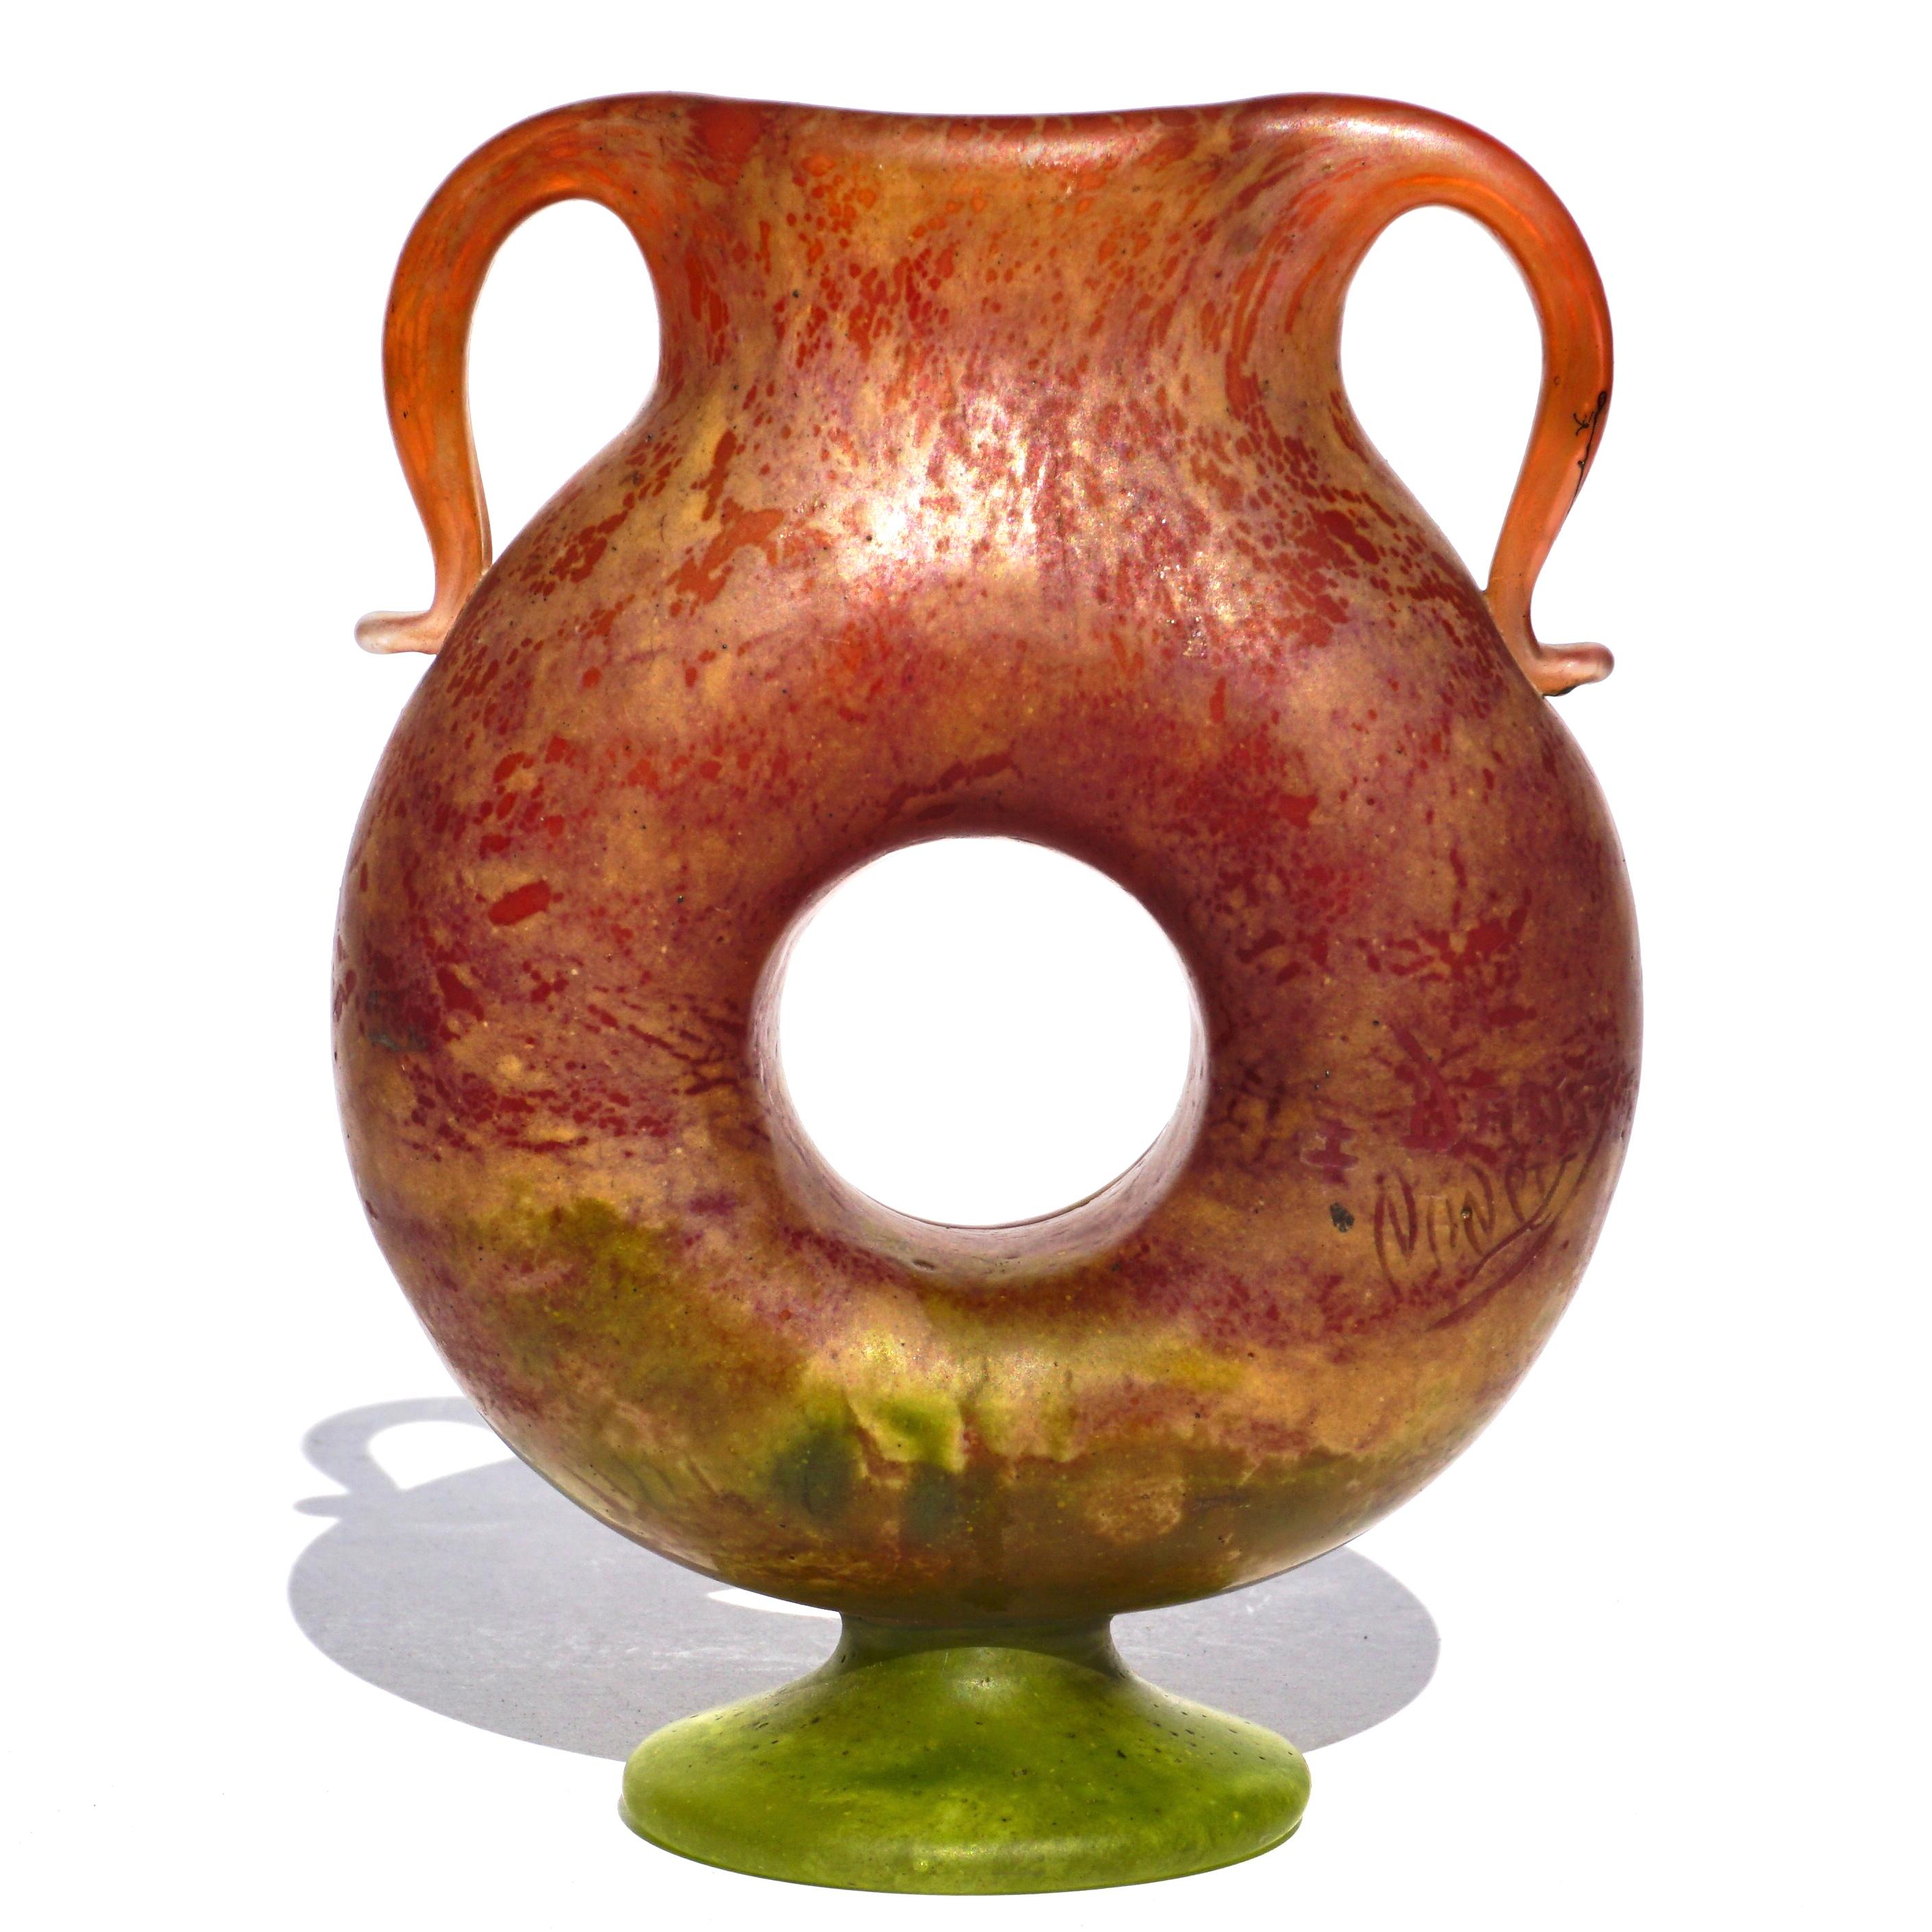 Daum Nancy Art Nouveau Vase à pieds à anse appliquée. Un très rare vase en forme de donut avec de belles poignées appliquées. Des rouges aux roses, des crèmes aux verts.

Hauteur : 5 pouces
Largeur : 3.75 pouces

Condition : Mint

Signé Daum Nancy